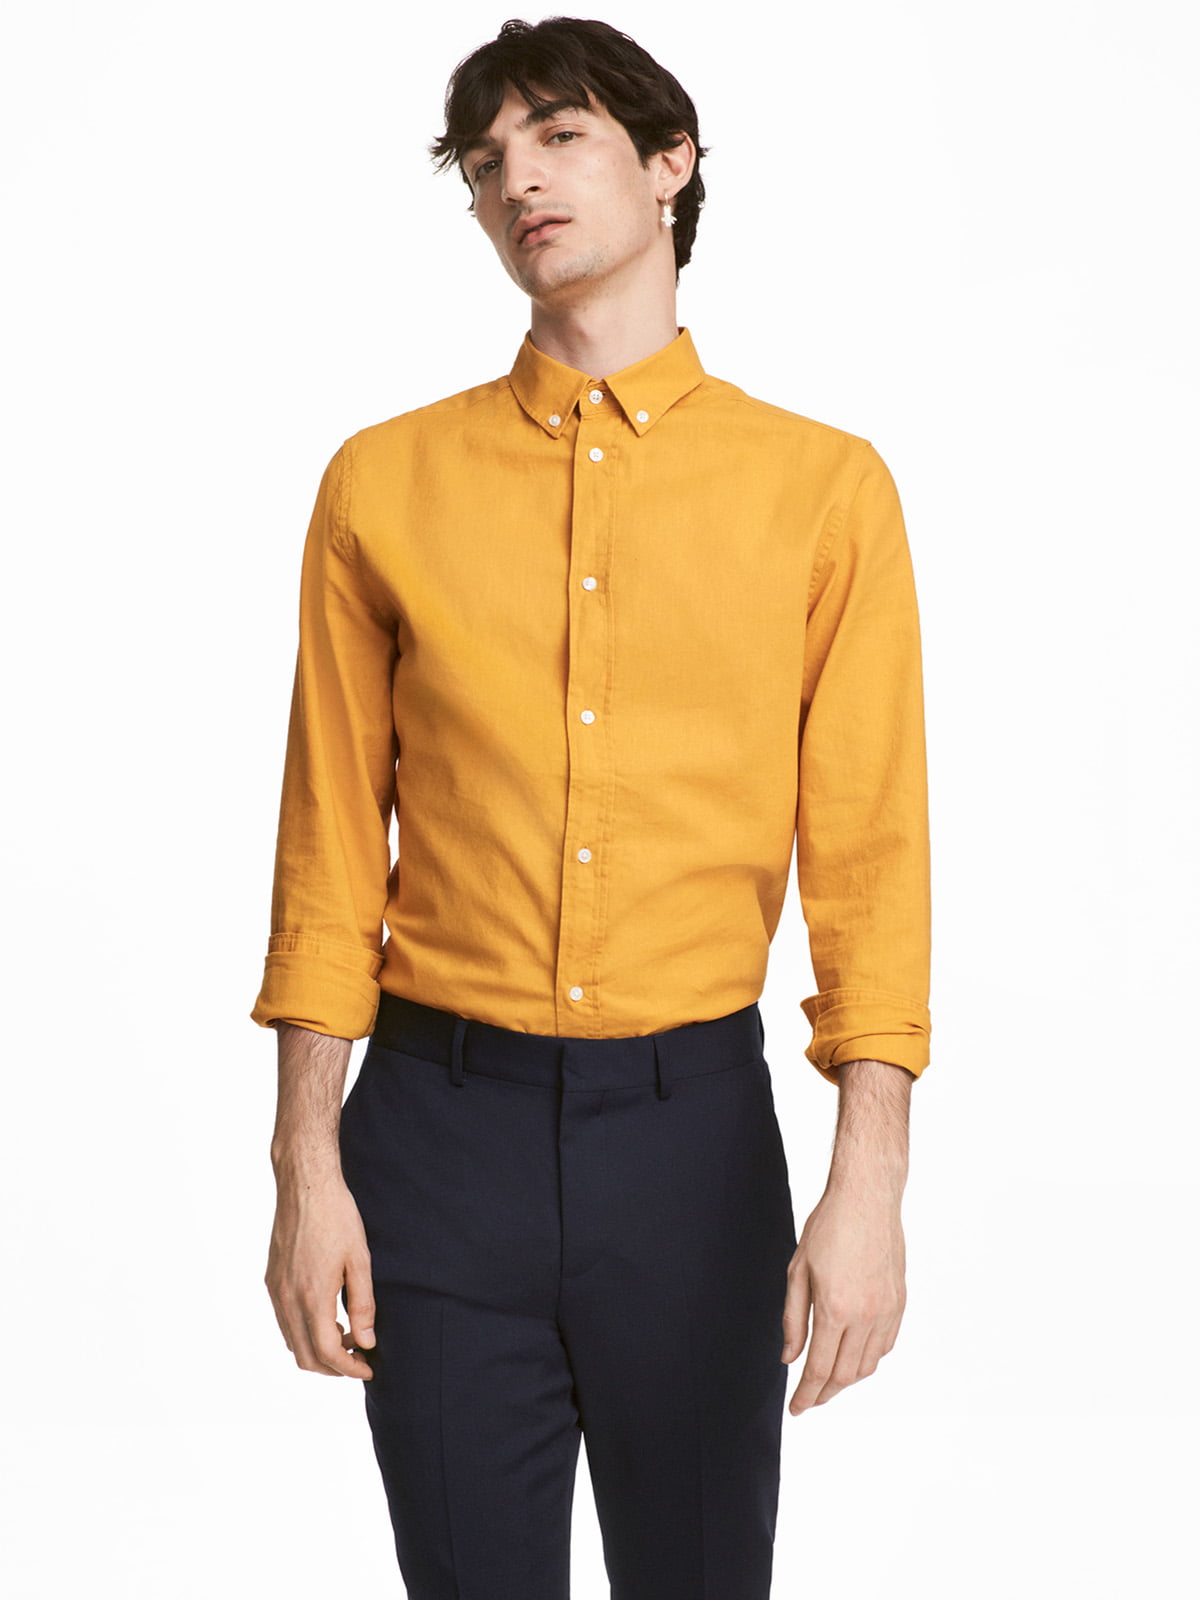 Горчичная рубашка. Рубашка горчичного цвета. Горчичная рубашка мужская. Рубашка цвета горчицы. H M рубашка горчичного цвета.